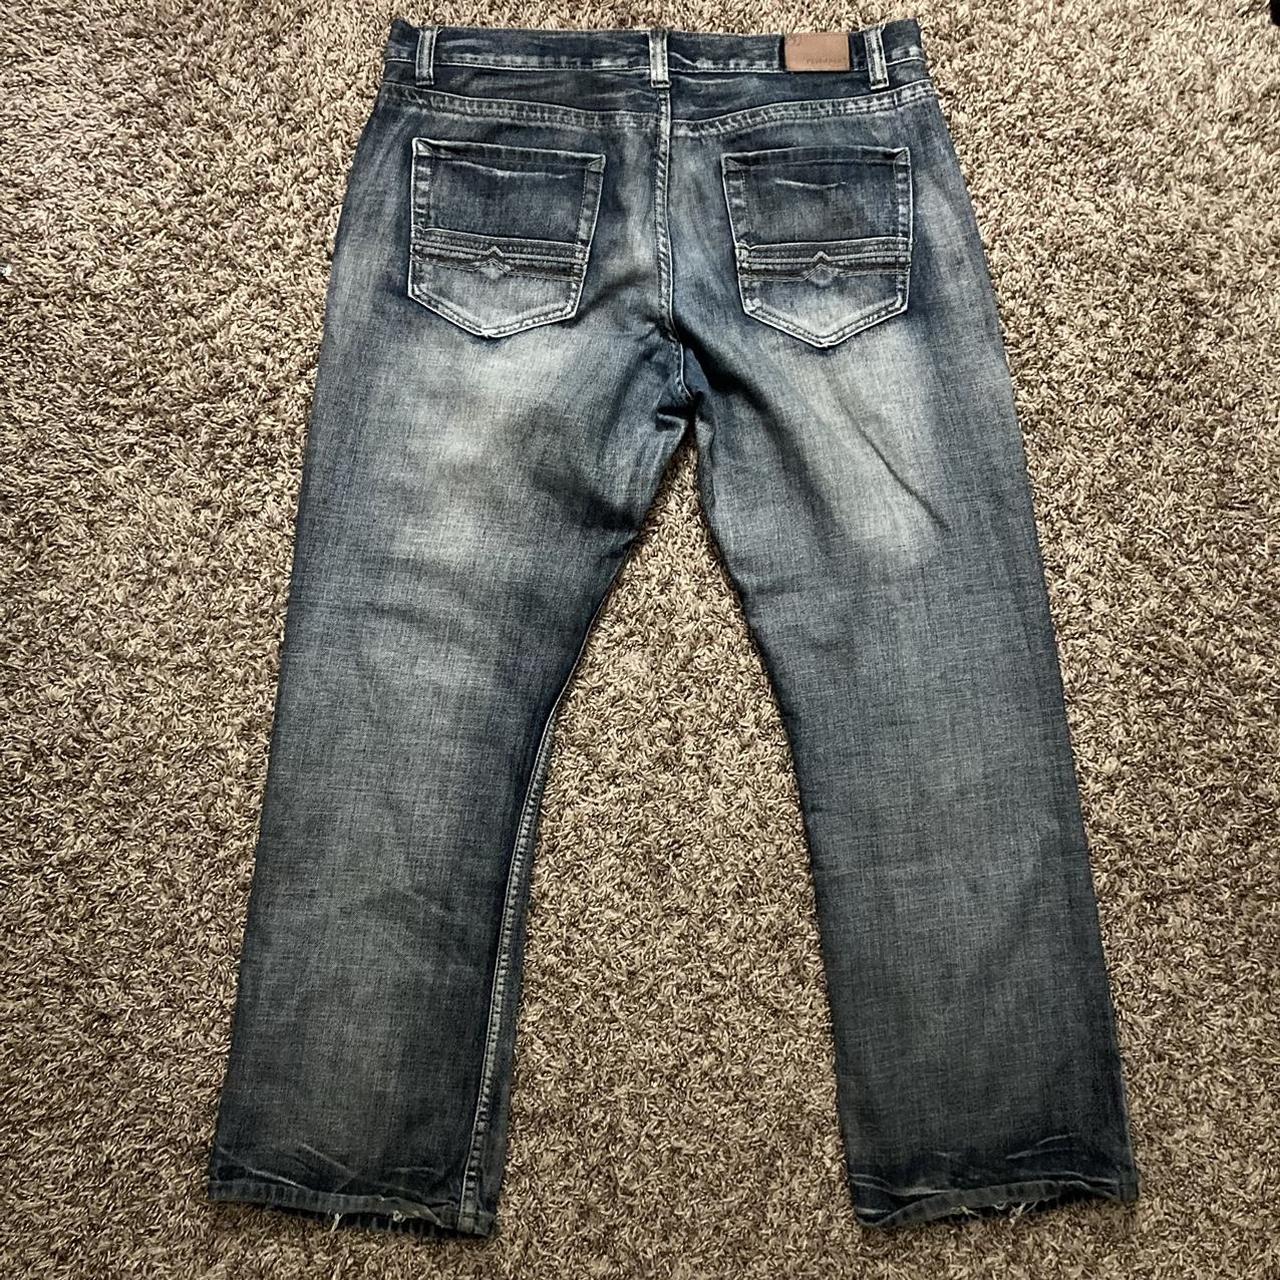 Flypaper jeans size 38/32 vintage faded affliction... - Depop